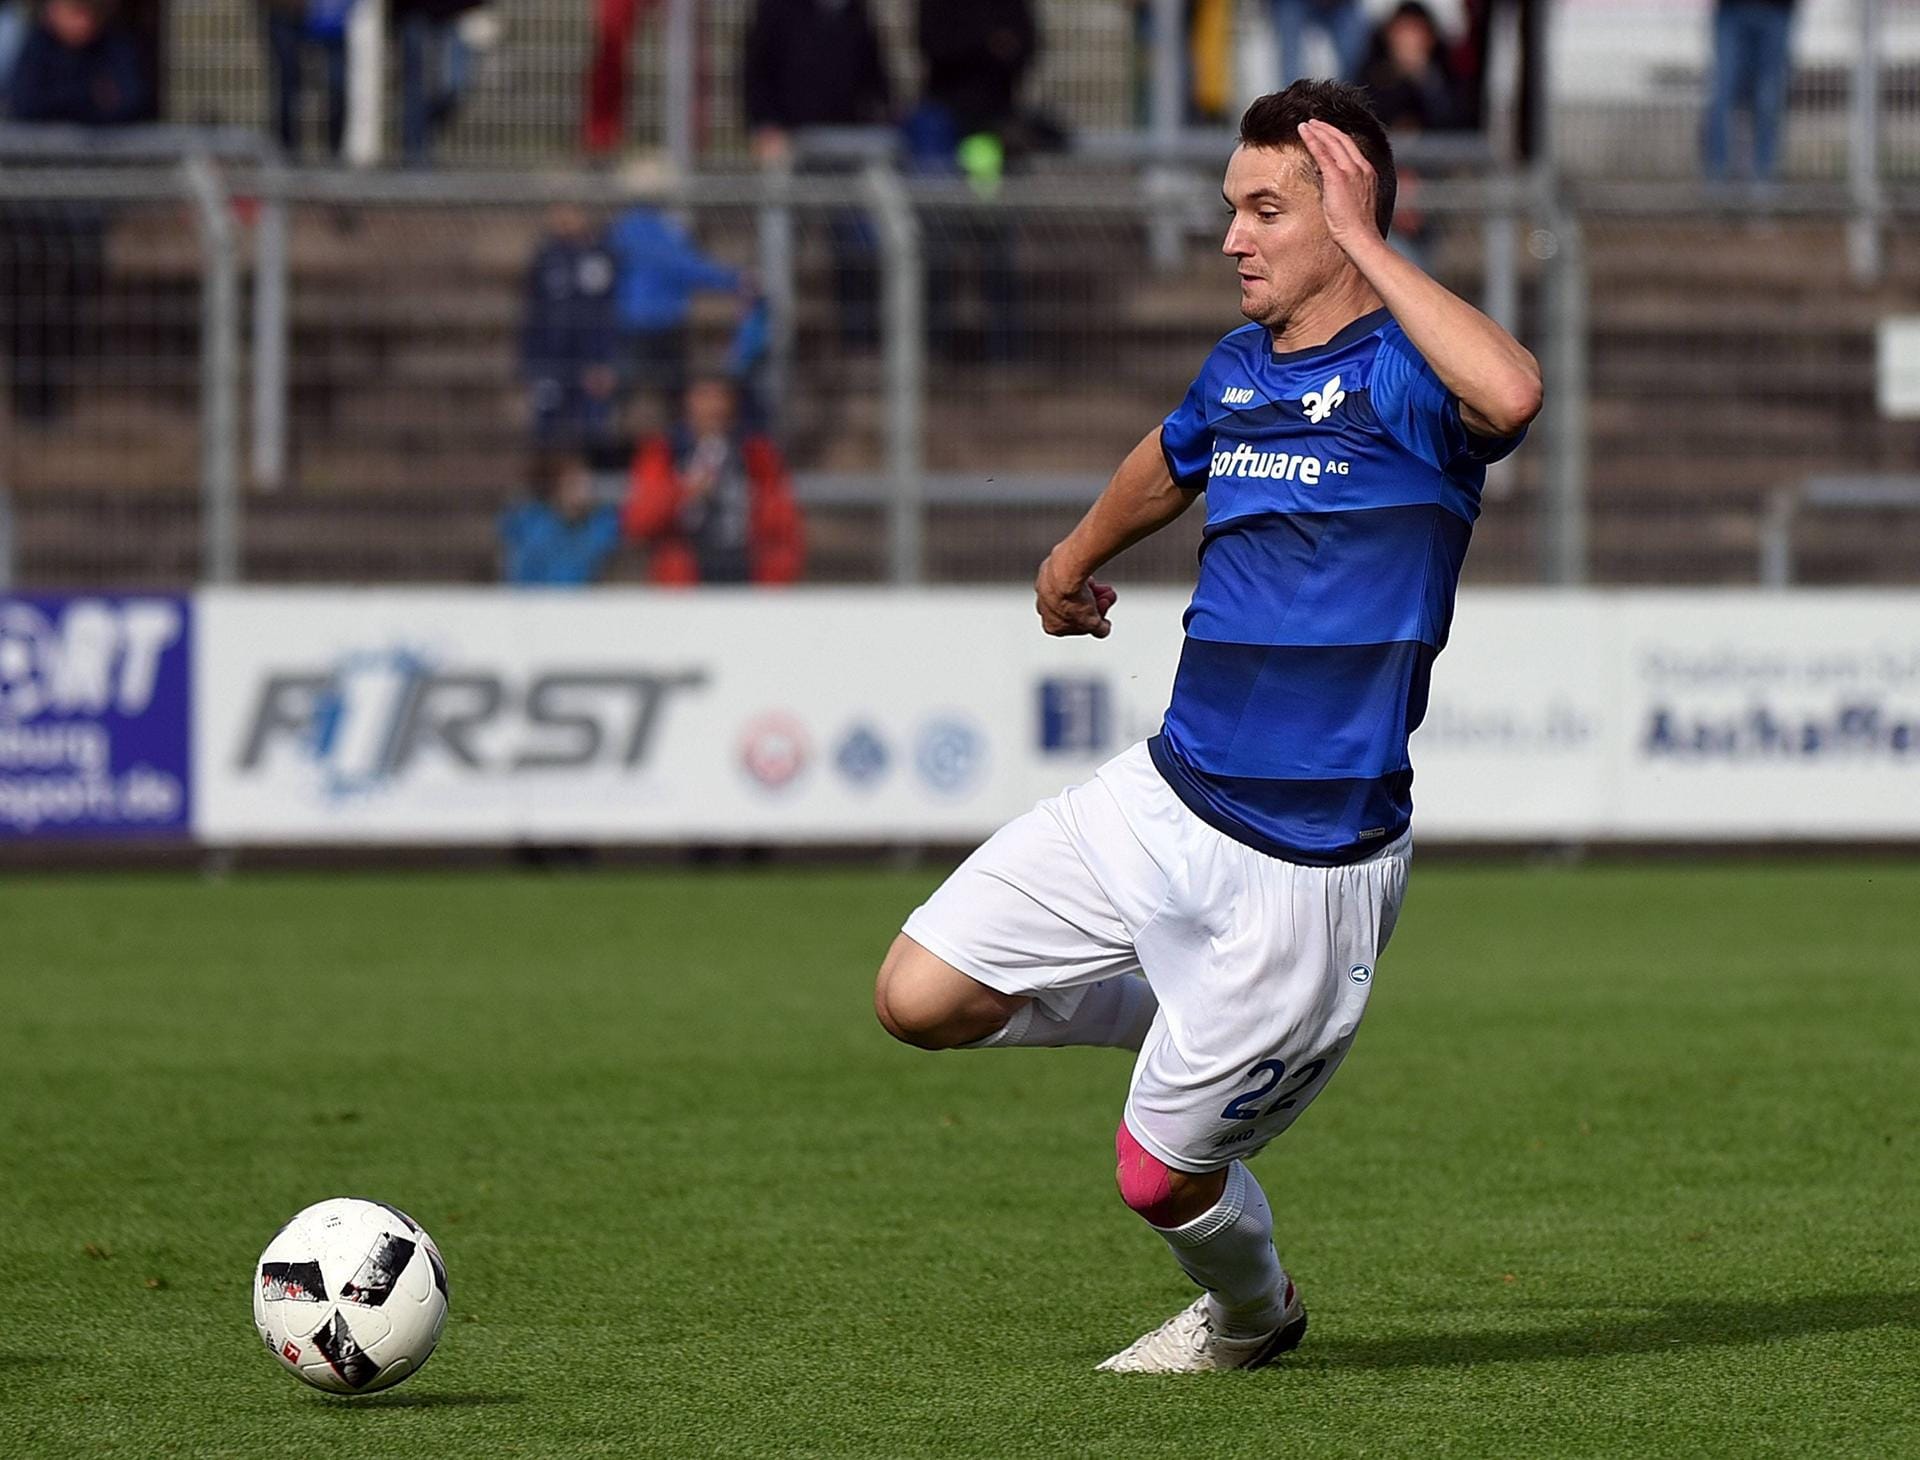 Denys Oliynyk konnte in Darmstadt die Erwartungen nicht erfüllen. Der ehemalige ukrainische Nationalspieler hat noch keinen neuen Klub. Für die "Lilien" kam er in drei Spielen nur 31 Minuten zum Einsatz, traf beim 1:1 gegen Hoffenheim.